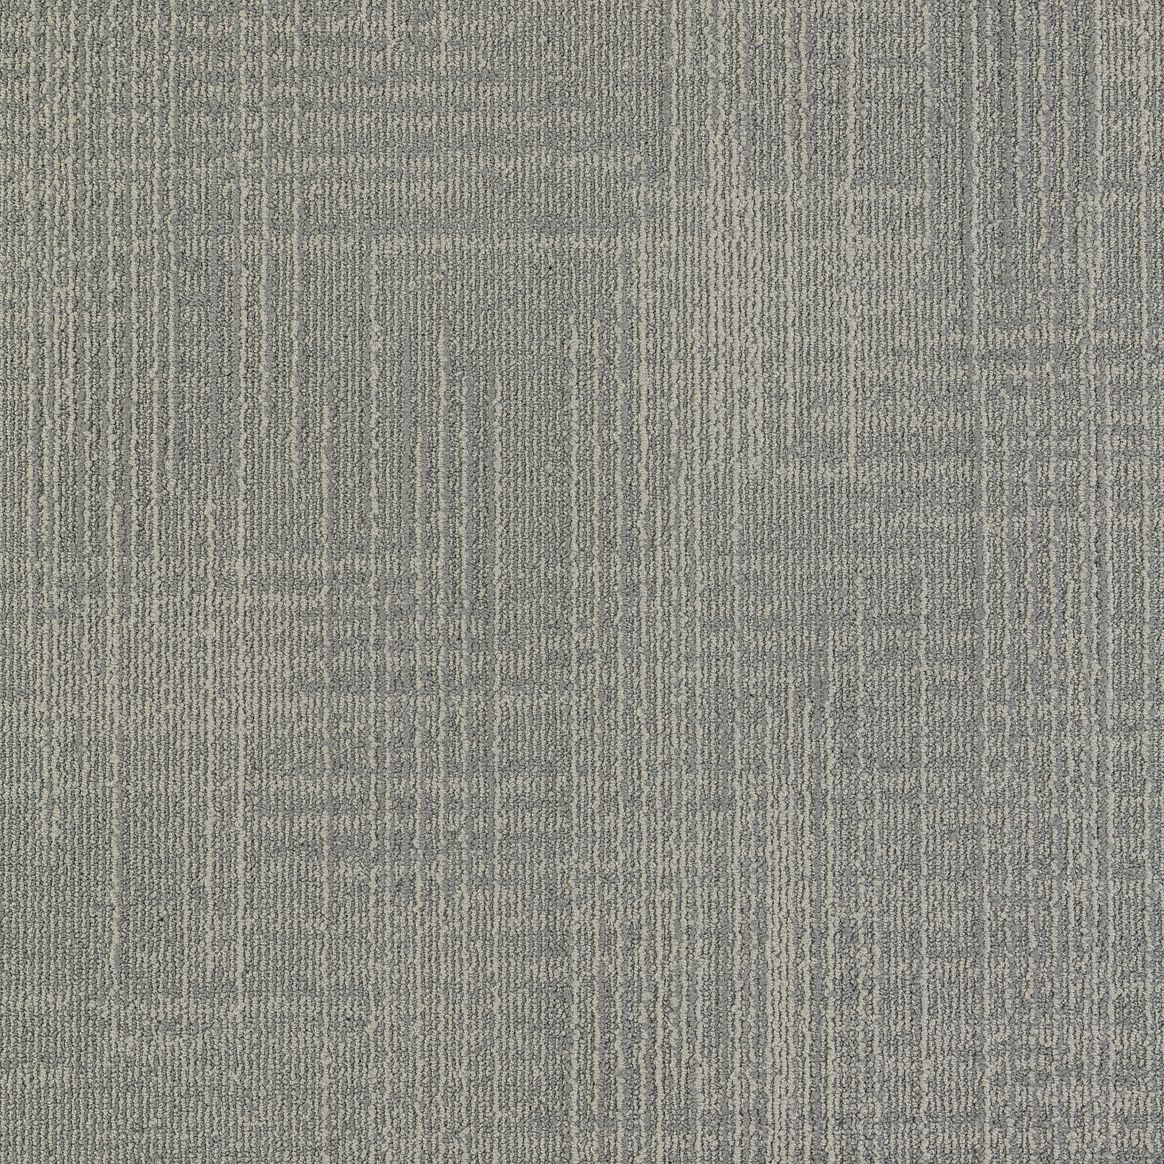 Mannington Commercial Relay Carpet Tile Dialtone 24" x 24" Premium (72 sq ft/ctn)